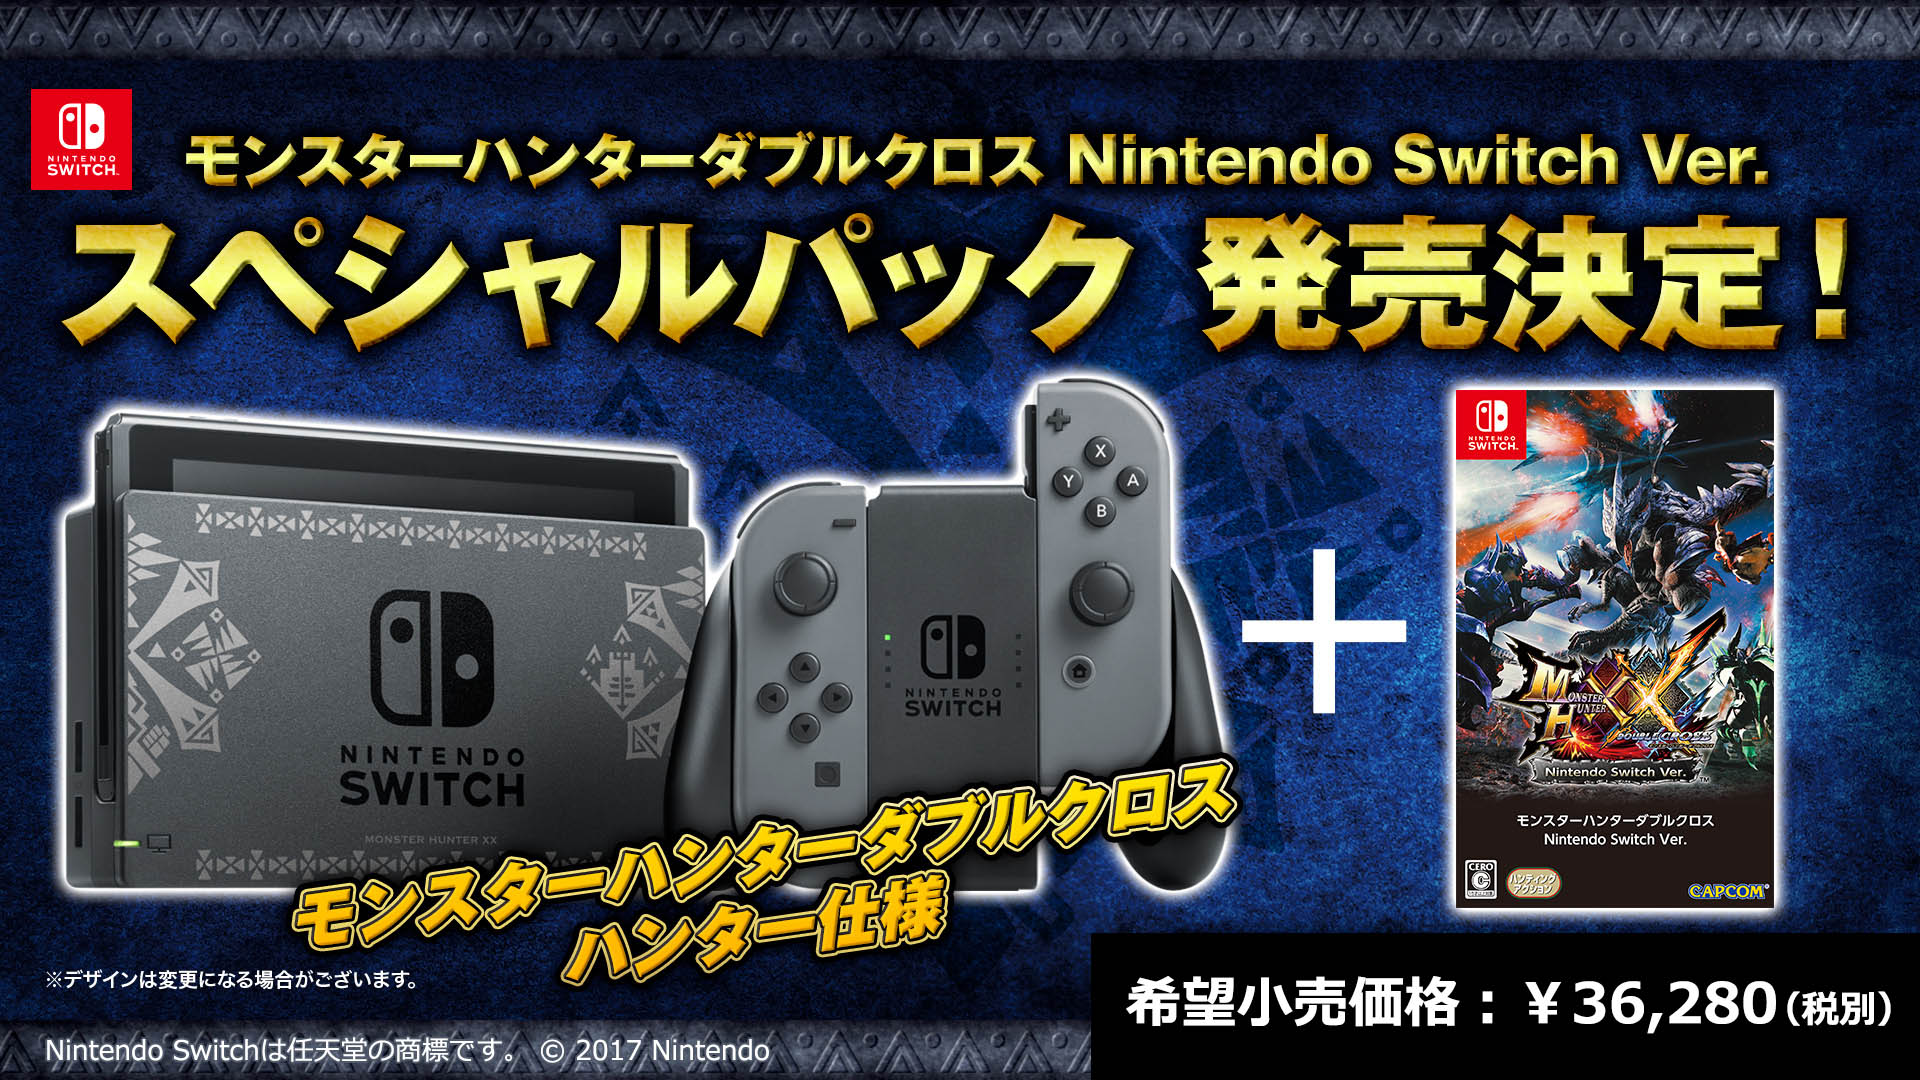 CAPCOM：モンスターハンターダブルクロス Nintendo Switch Ver. 公式サイト